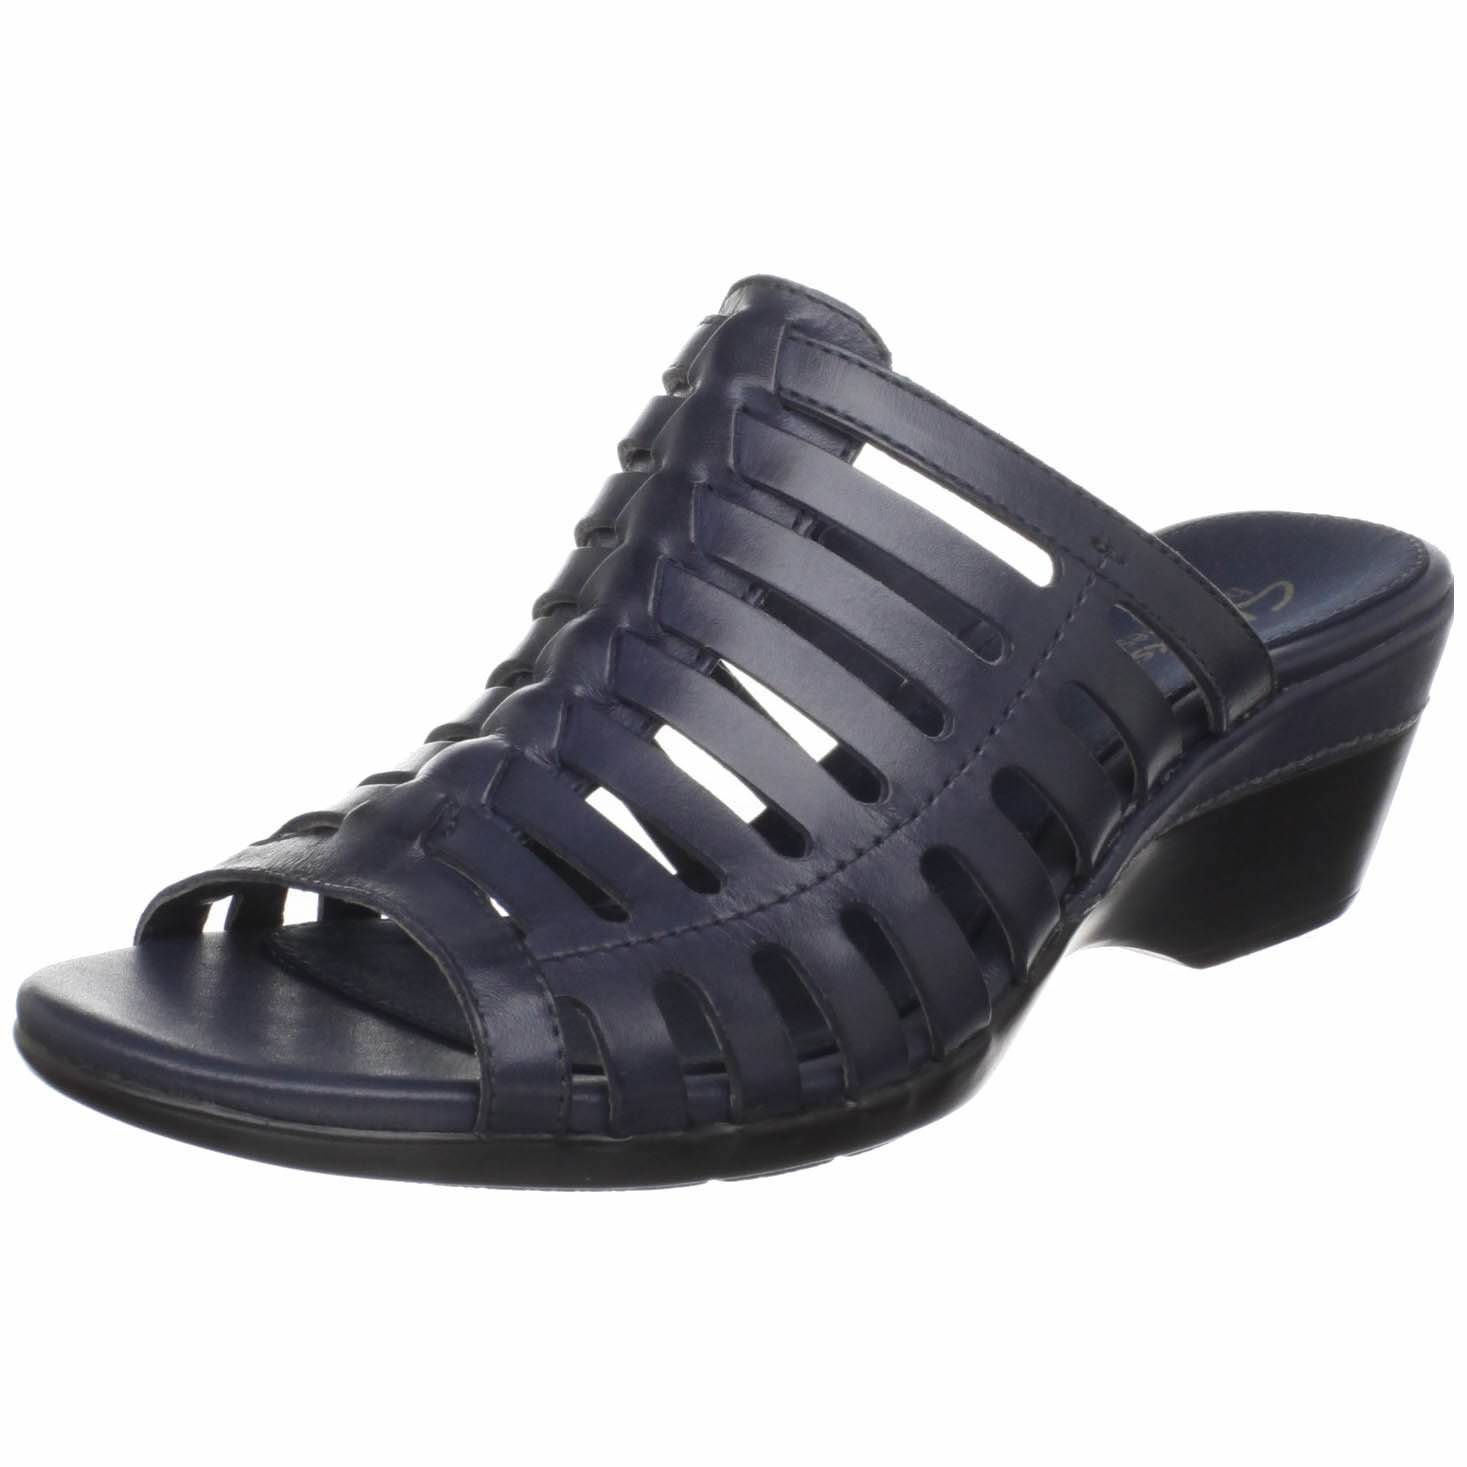 Boot Sandals: Sale Clarks Sandals